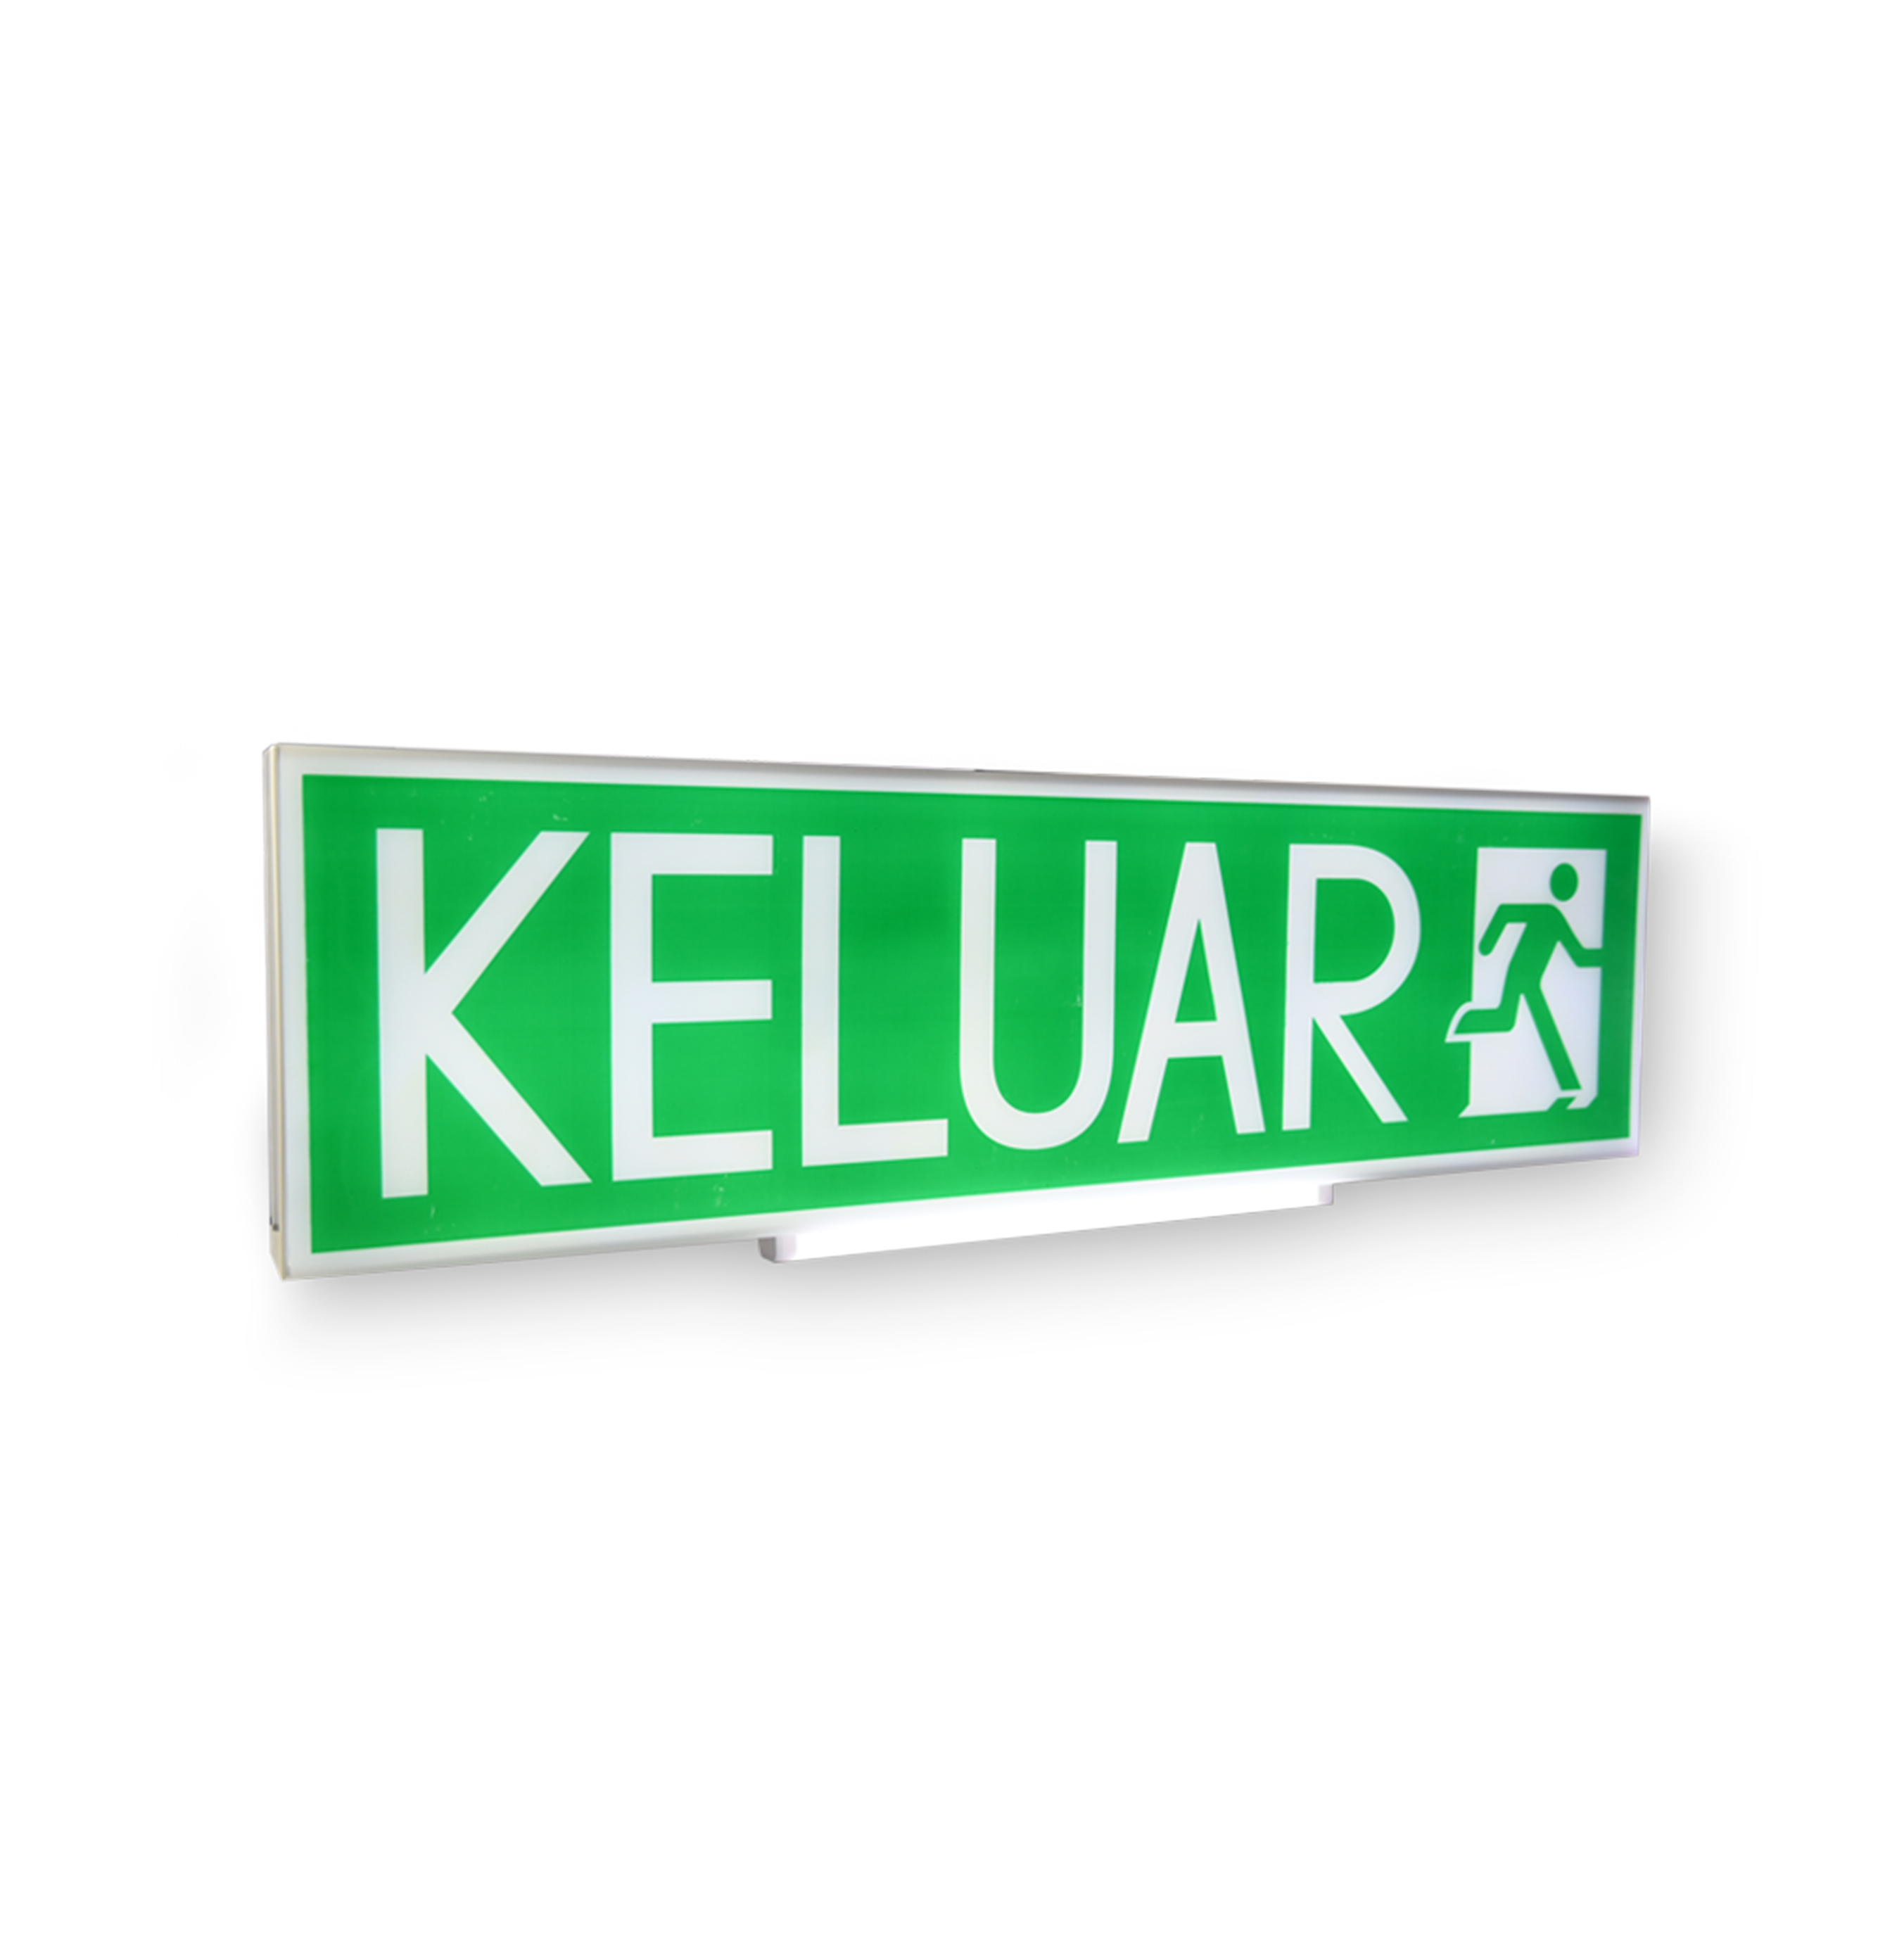 LED Keluar Sign / Emergency Light - Image 2